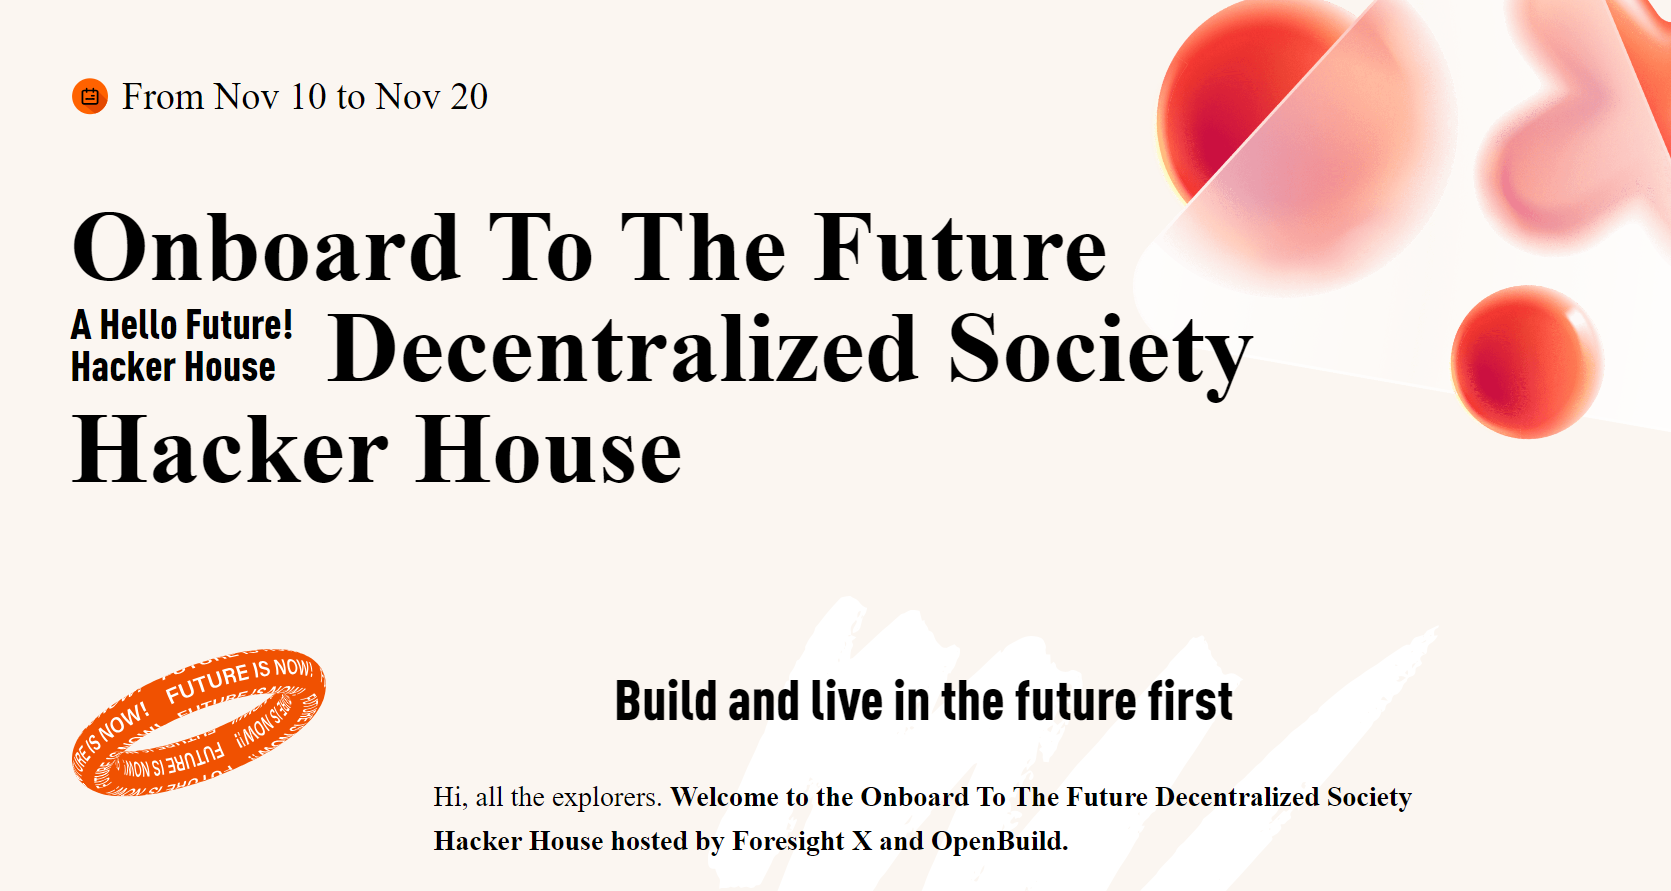 Geleceğin Merkezsiz Toplumu için Yola Çık! Hacker House